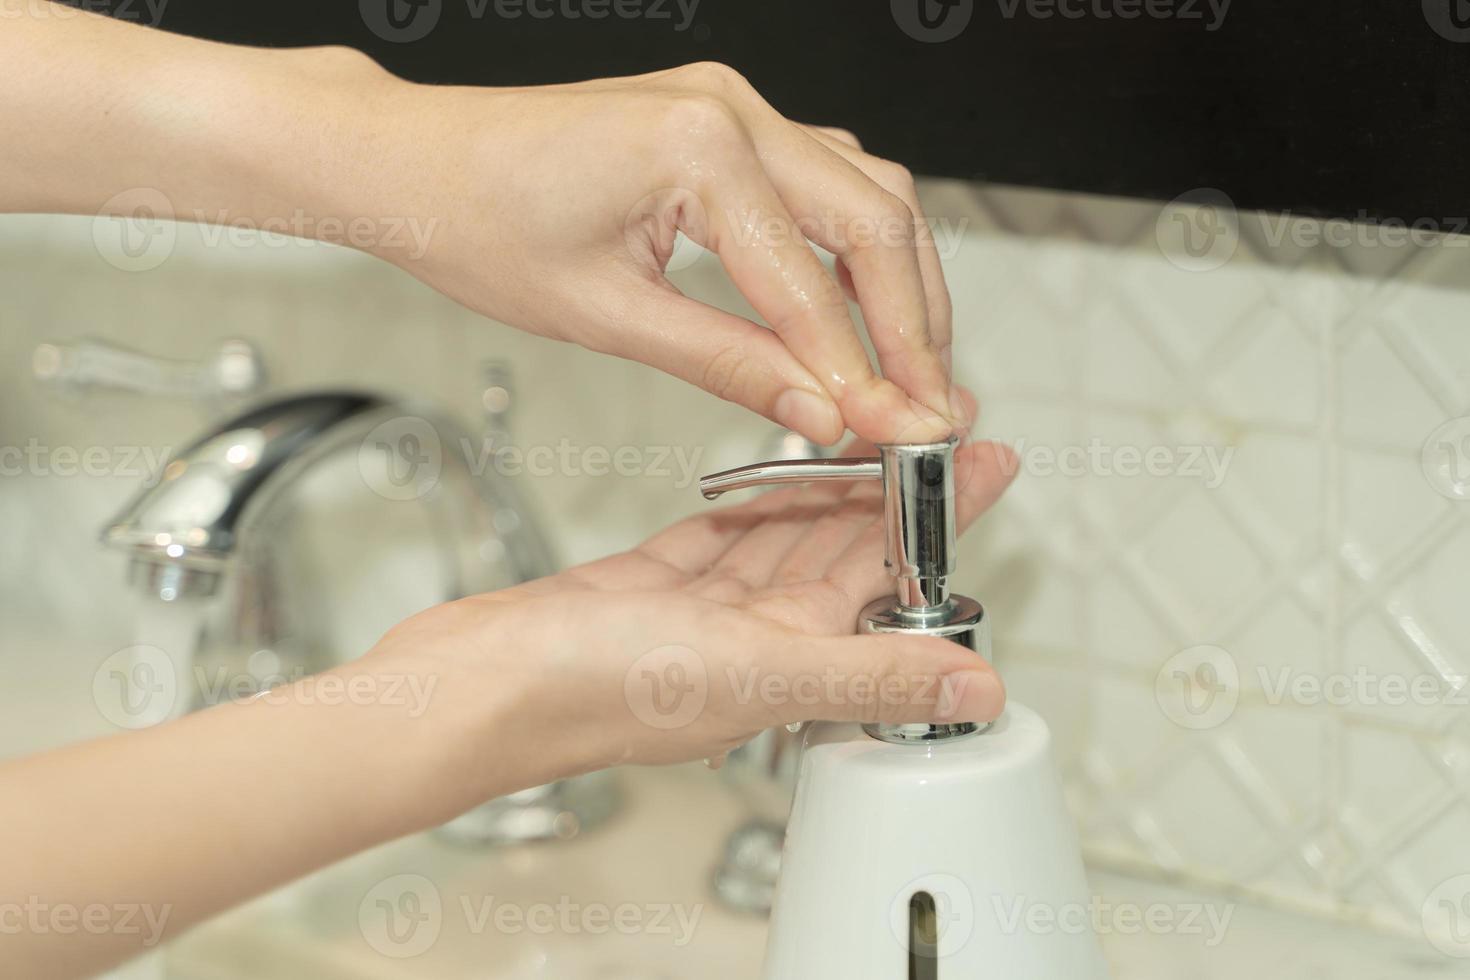 la main de la femme utilise du savon et se lave sous le robinet d'eau. notion d'hygiène. photo